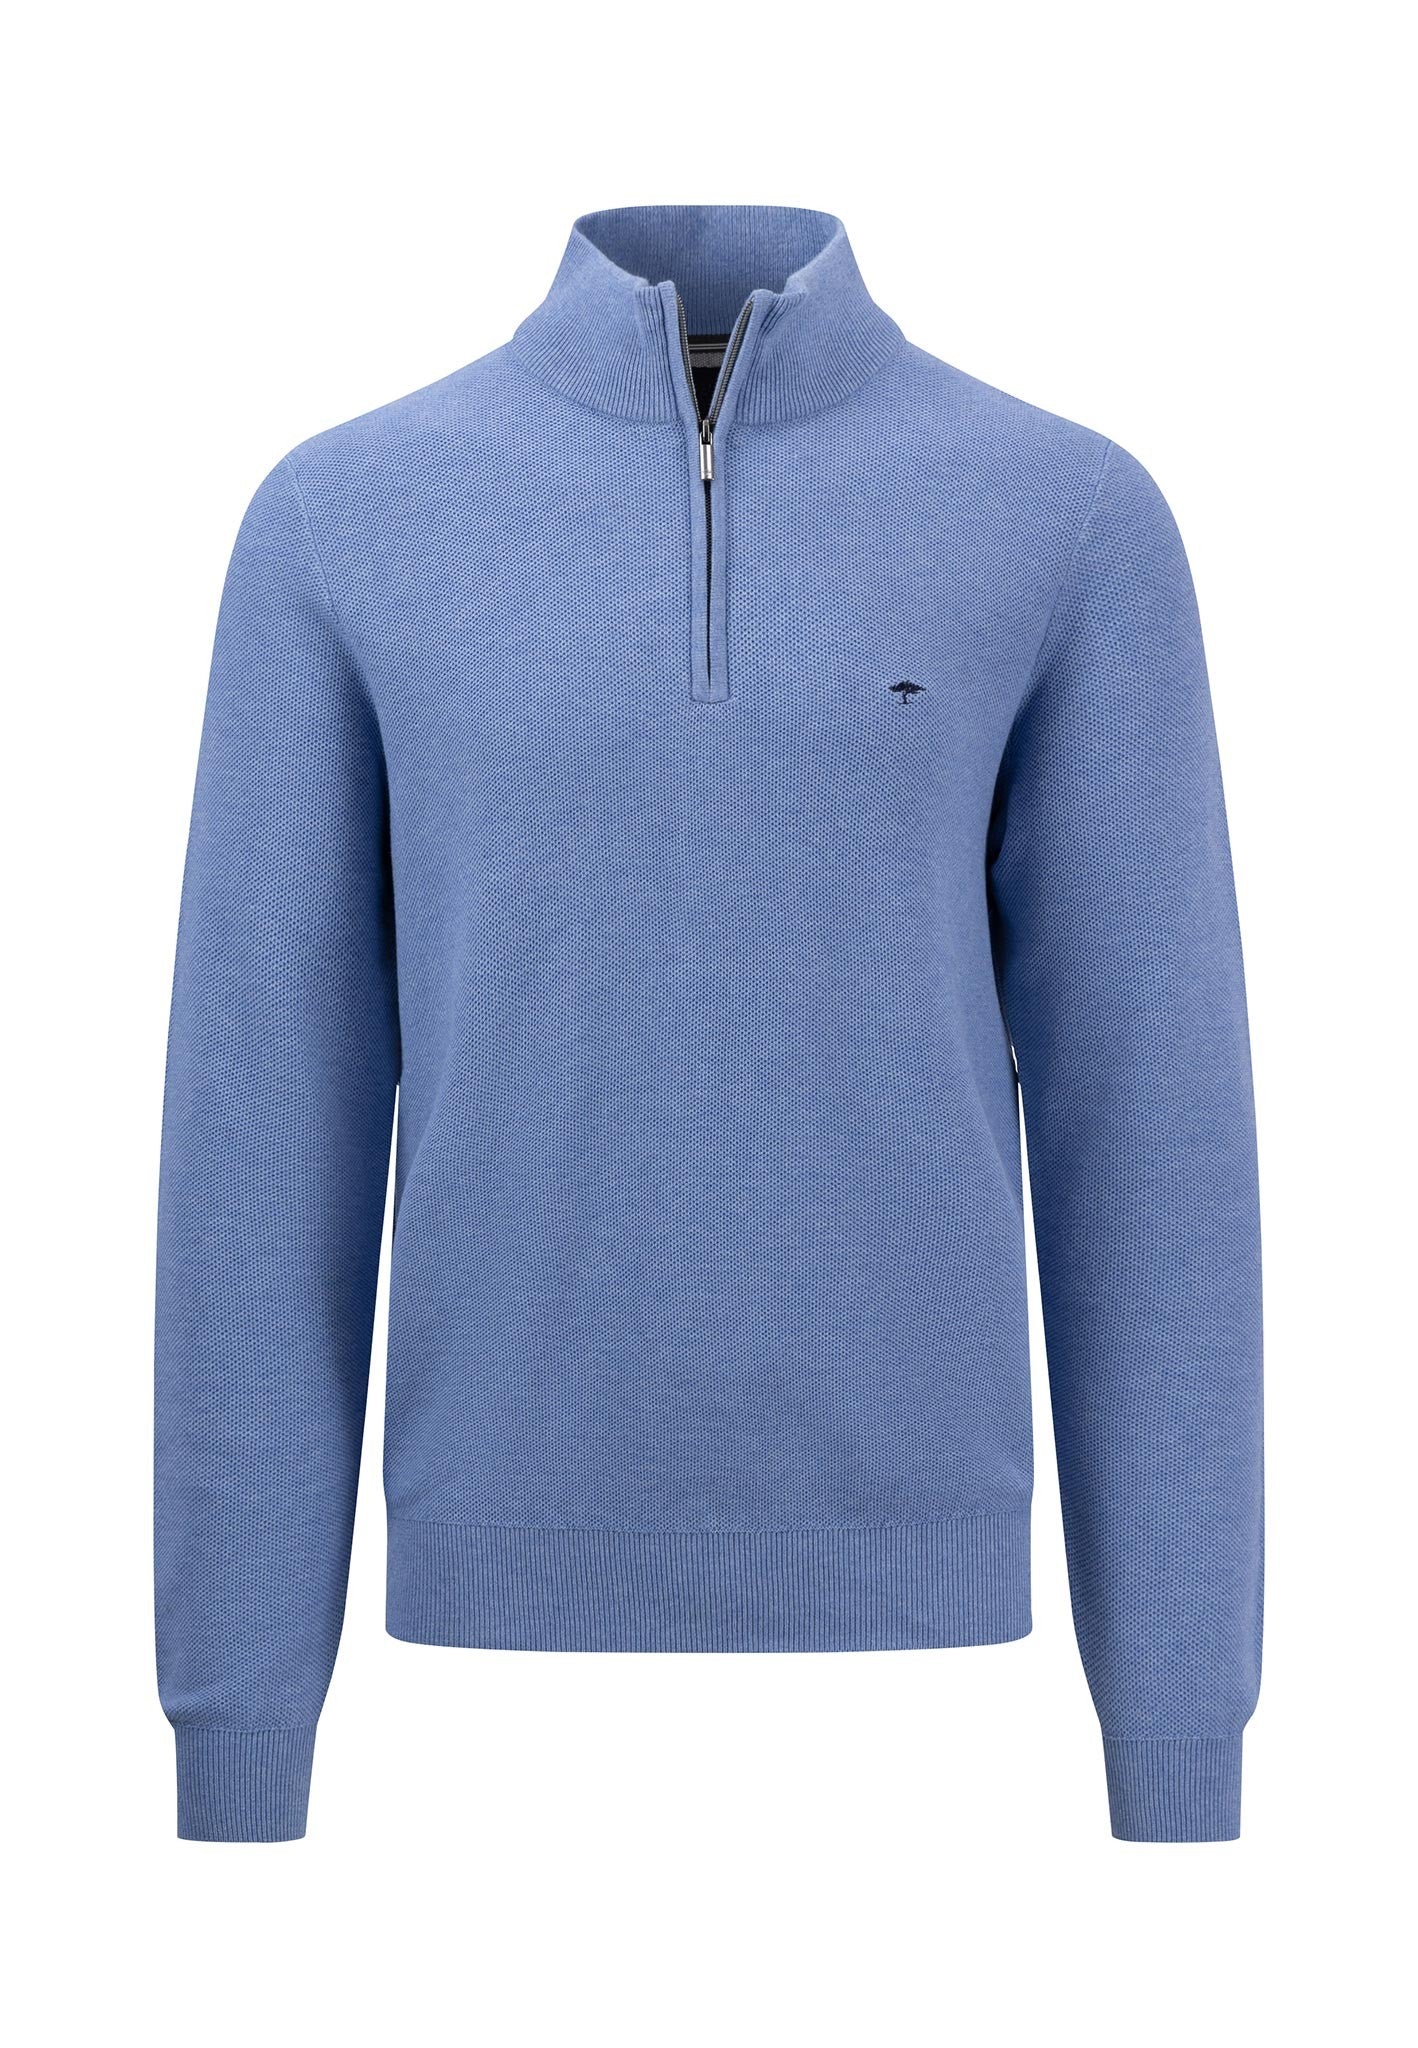 Fynch Hatton Superfine Cotton Half Zip Sweater Blue